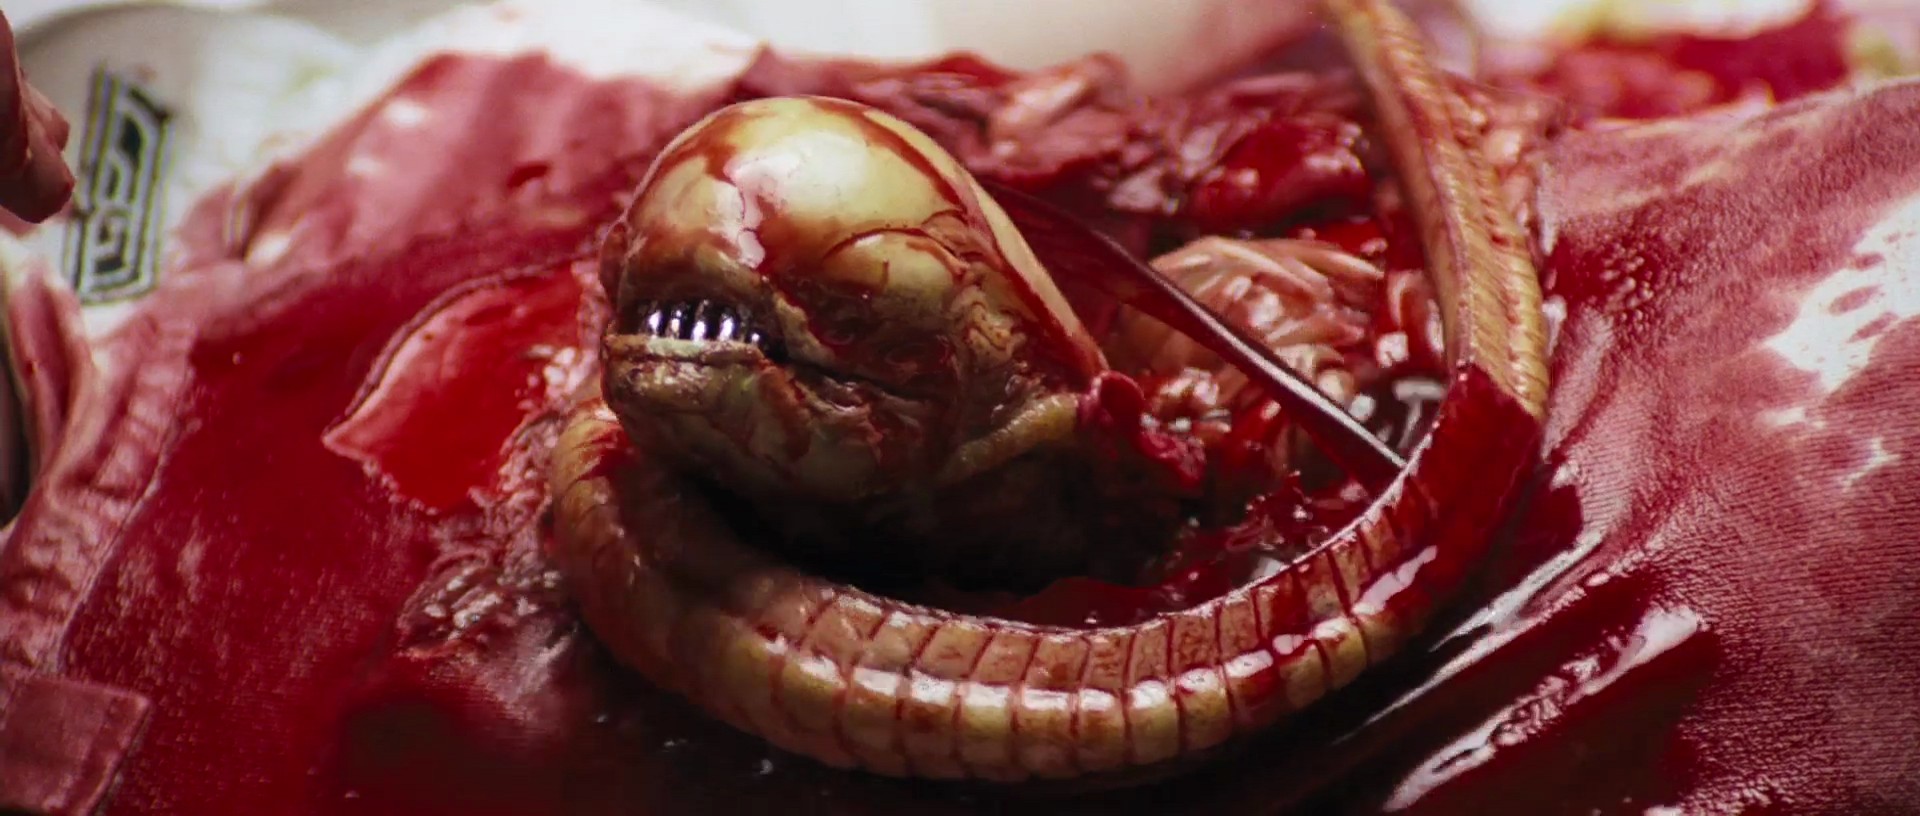 Criatura em cena do filme Alien, o Oitavo Passageiro (1979) (Foto: Divulgação)